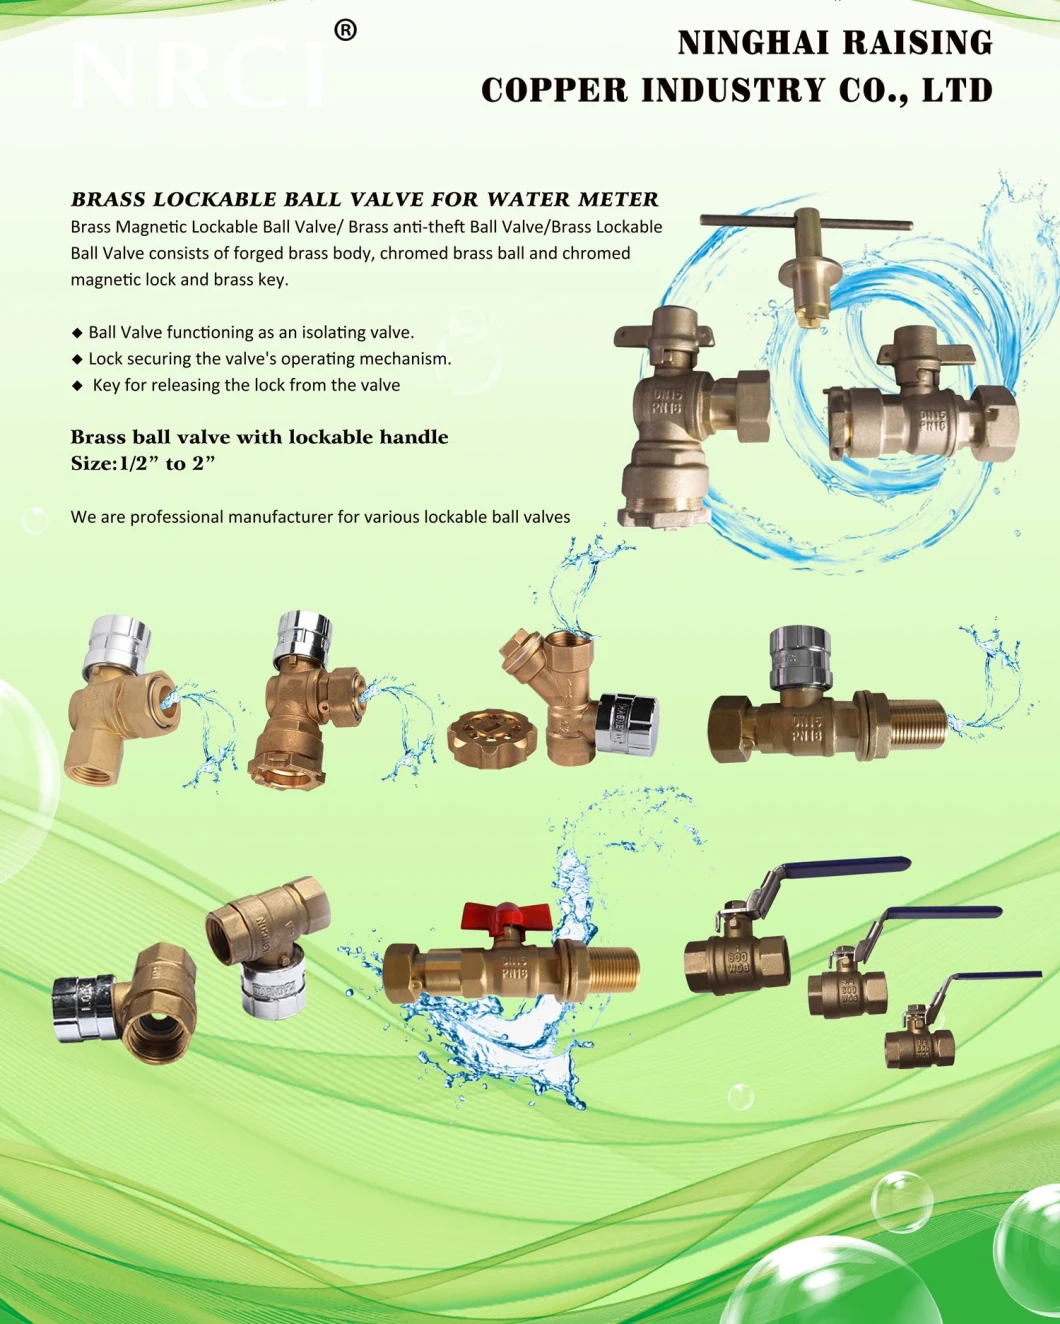 Low Lead 3-Ways Bronze Water Fittings (XX-DSCN2403)